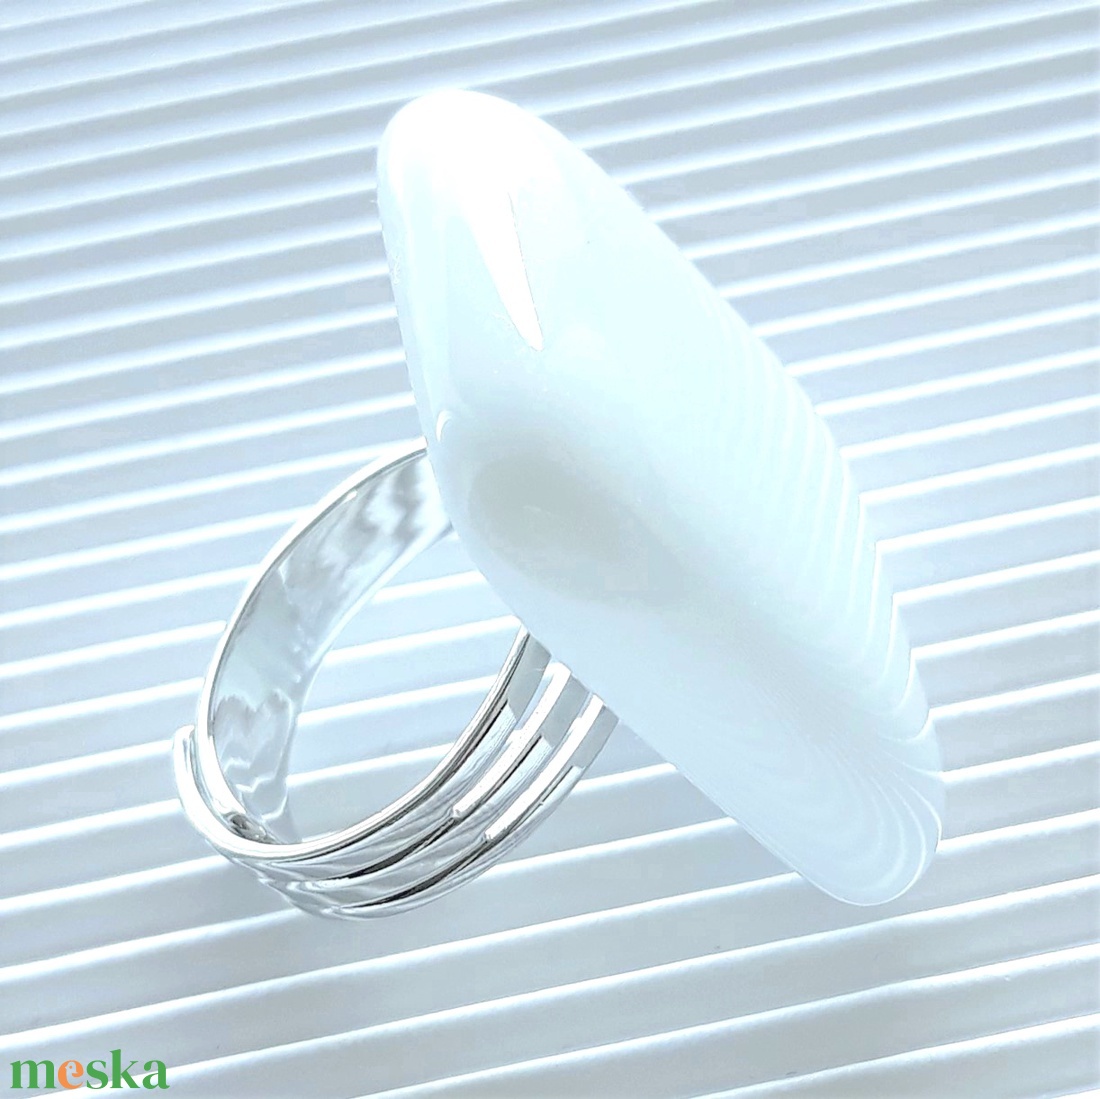 Hófehér maxi üveg gyűrű, üvegékszer - ékszer - gyűrű - statement gyűrű - Meska.hu